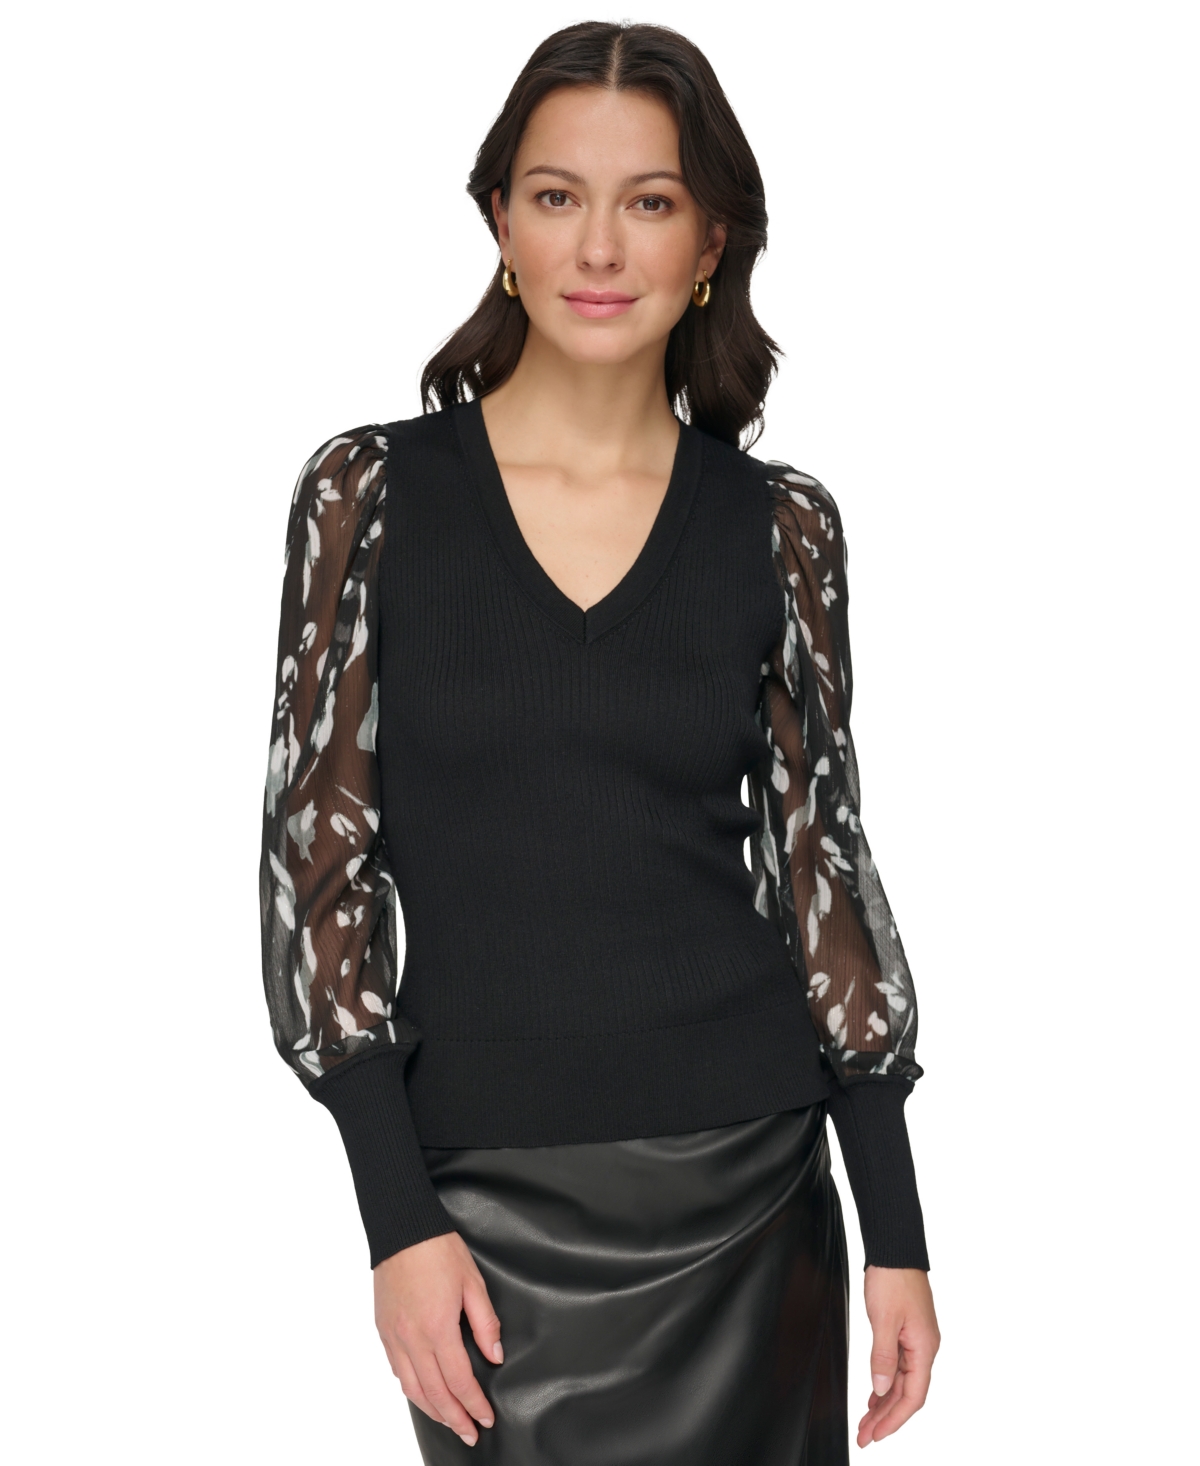 Dkny Women's Chiffon-sleeve V-neck Sweater In Black,black,steel Grey Multi